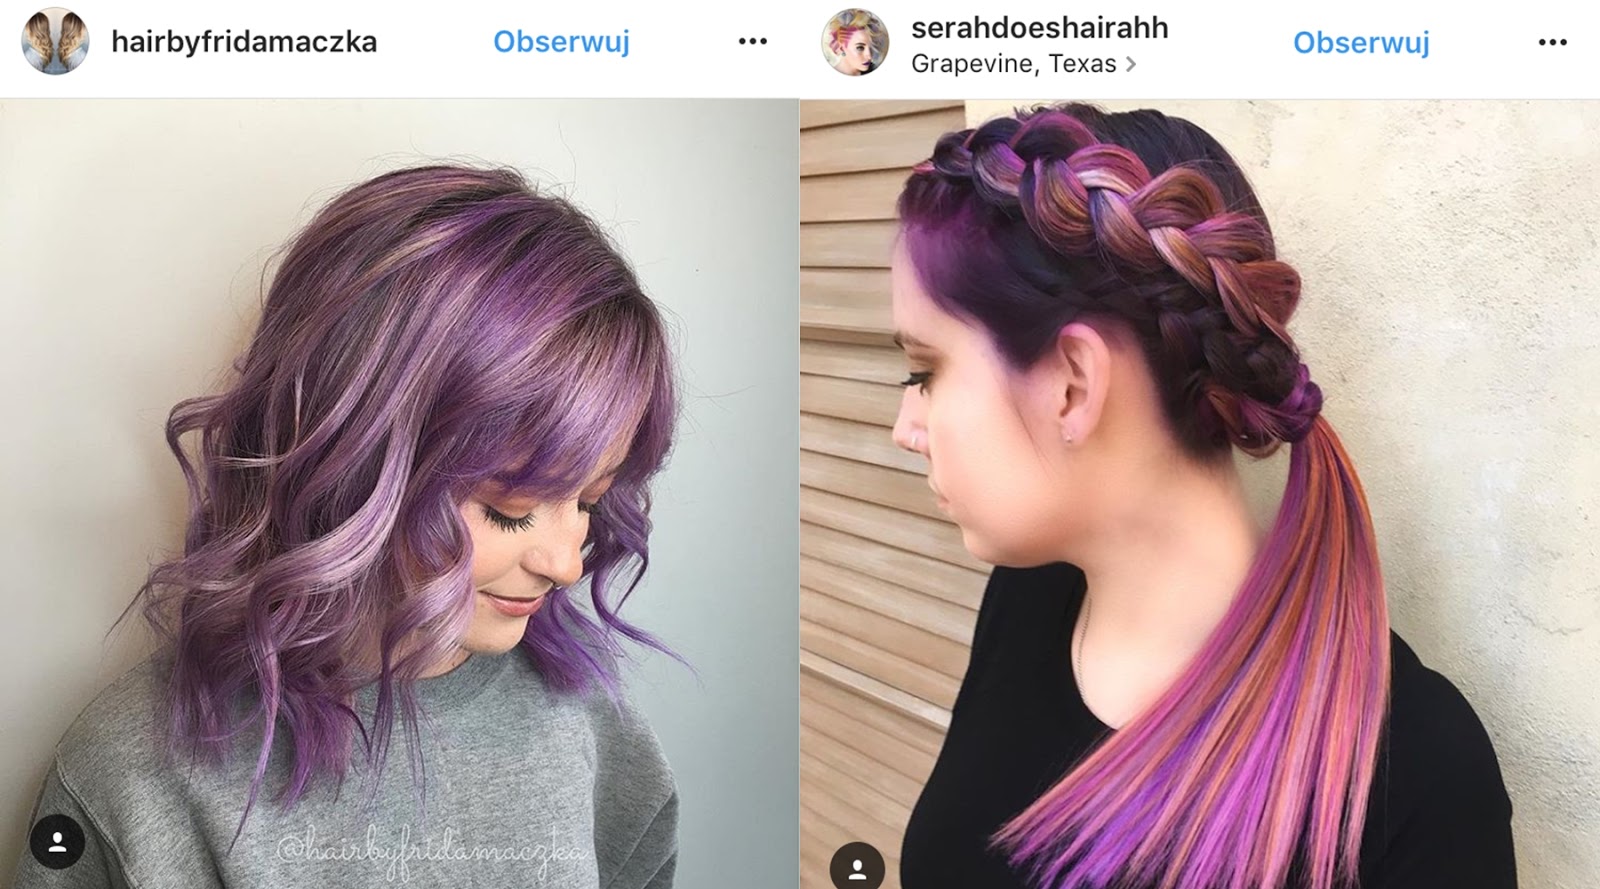 fioletowe włosy zdjęcia